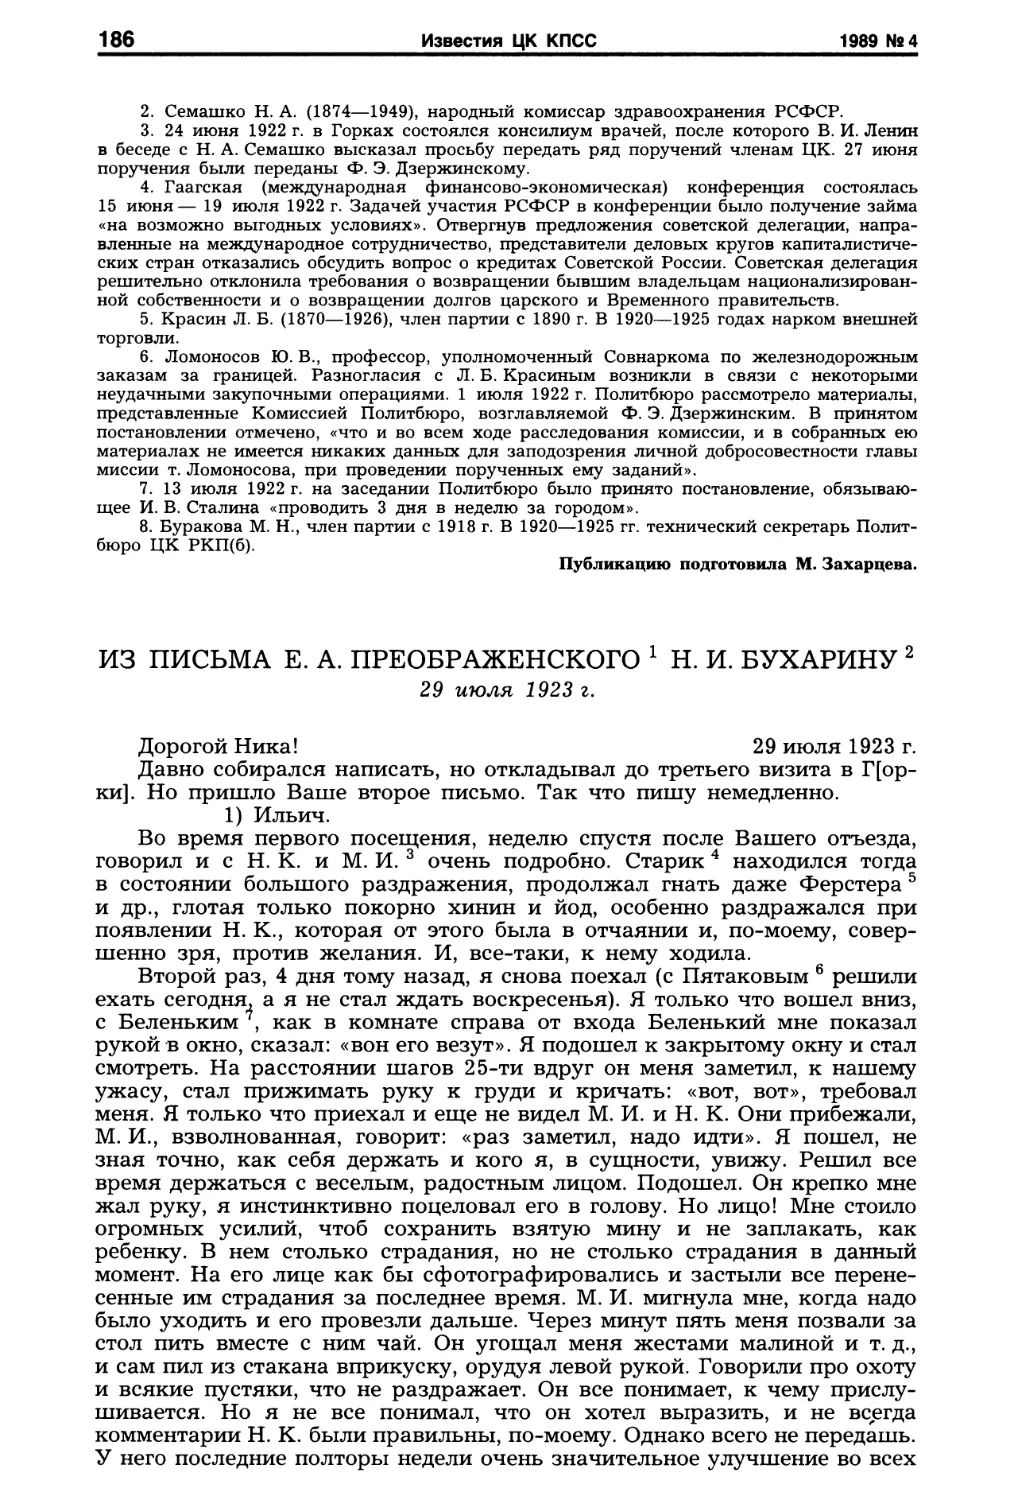 Из письма Е.А. Преображенского Н.И. Бухарину. 29 июля 1923г